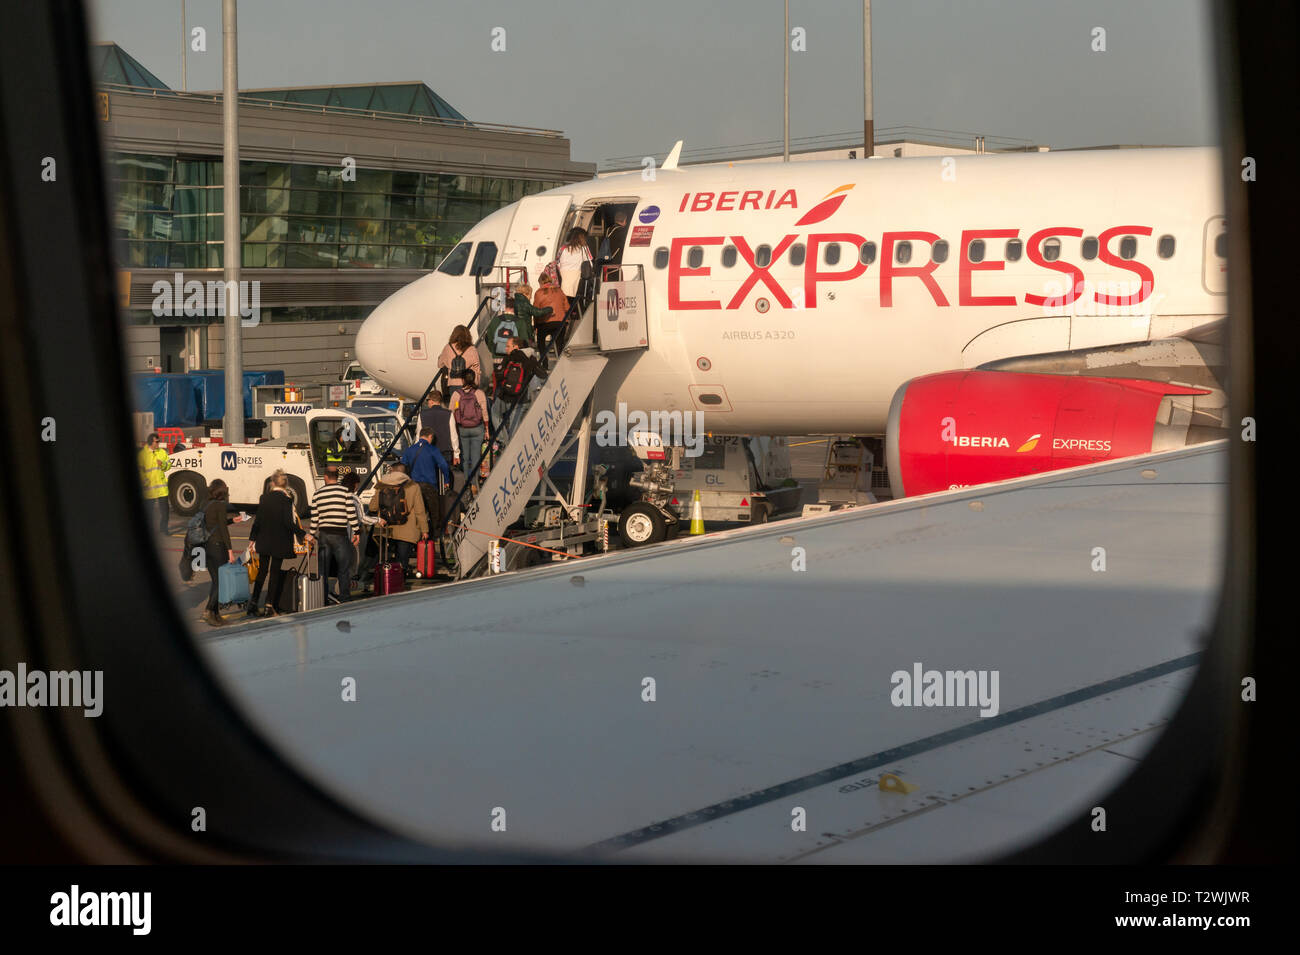 Iberia Express Airbus A320 Düsenflugzeug am Flughafen Dublin und Passagiere Personen, die an Bord eines kommerziellen Fluges gehen, wie sie durch ein Flugzeug gesehen werden Angezeigt Stockfoto